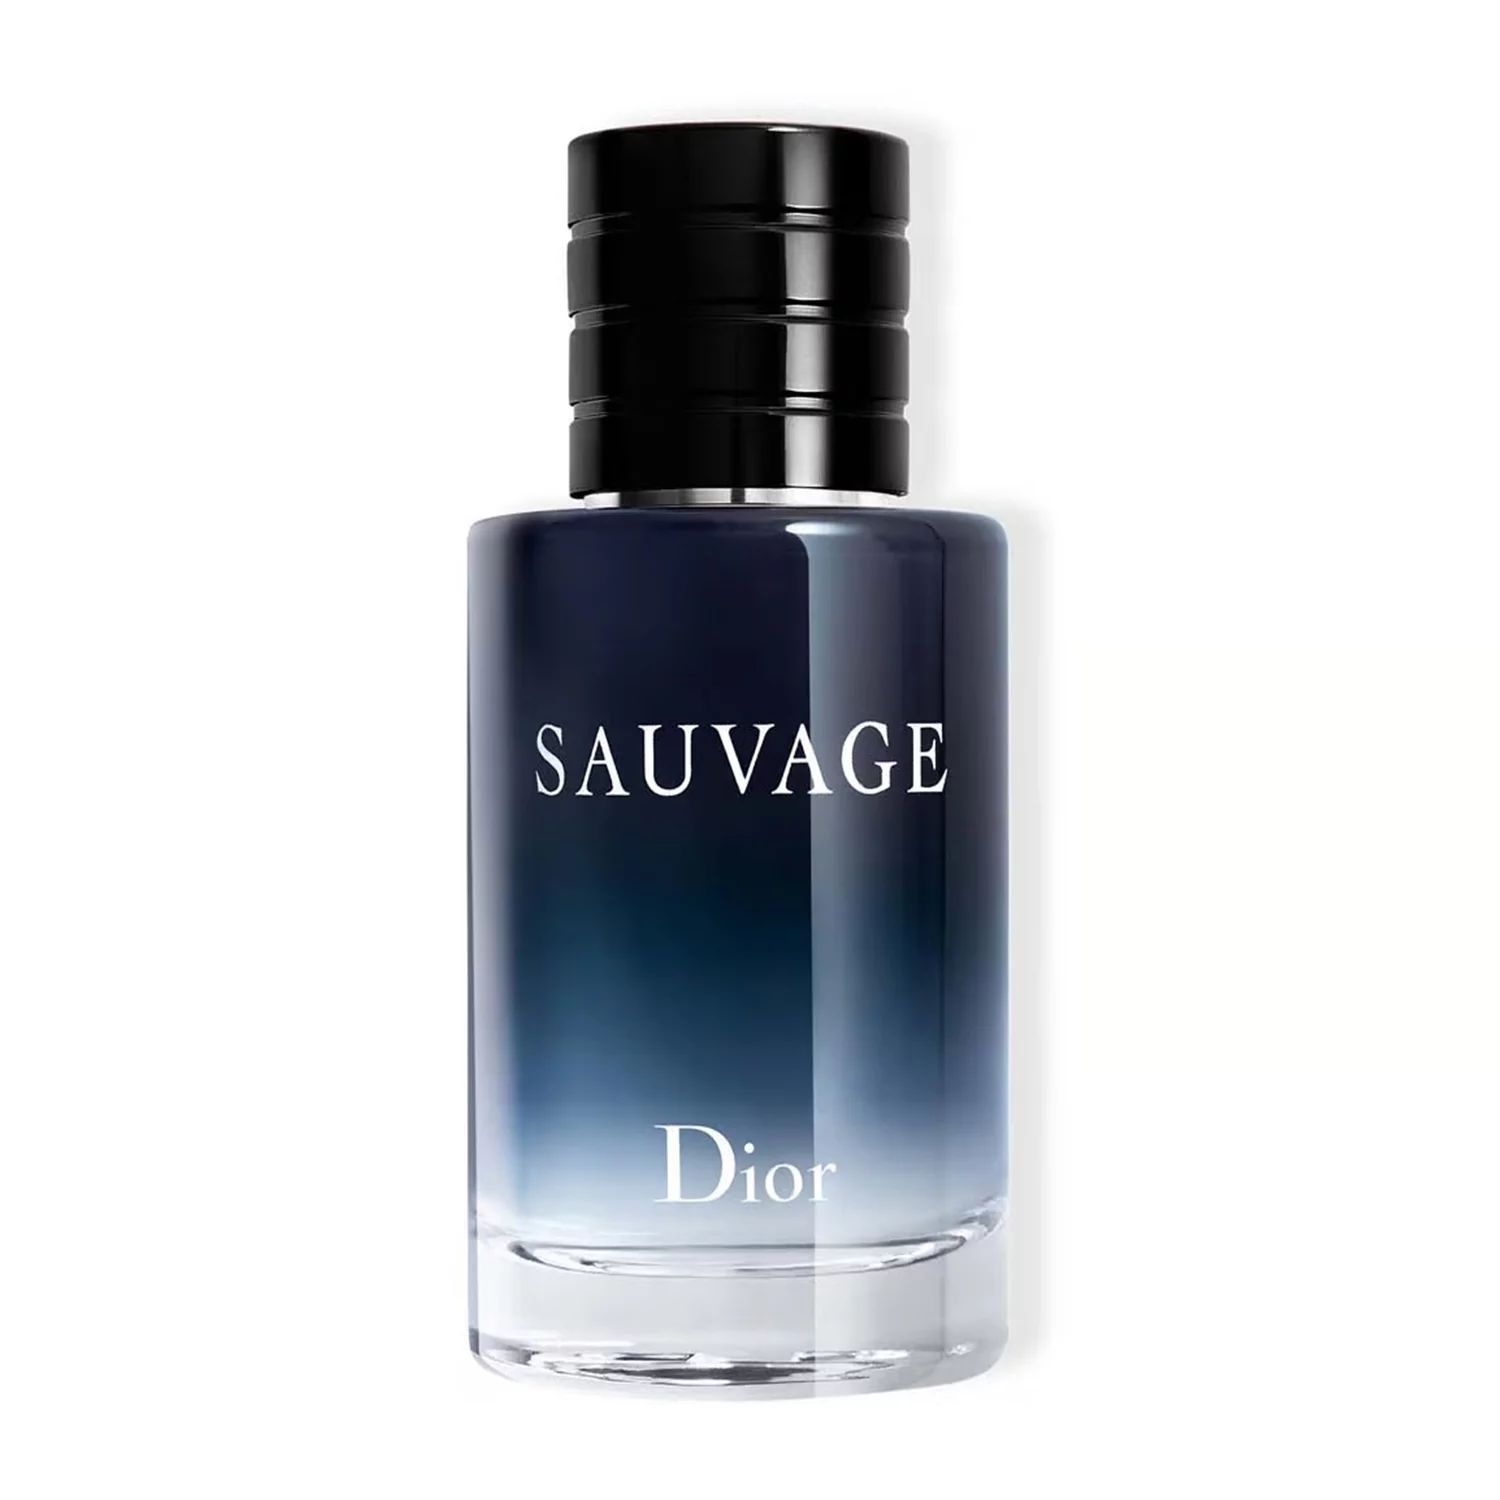 Dior Sauvage Eau de Toilette Cologne for Men - 60 ml / 2 oz | Walmart (US)